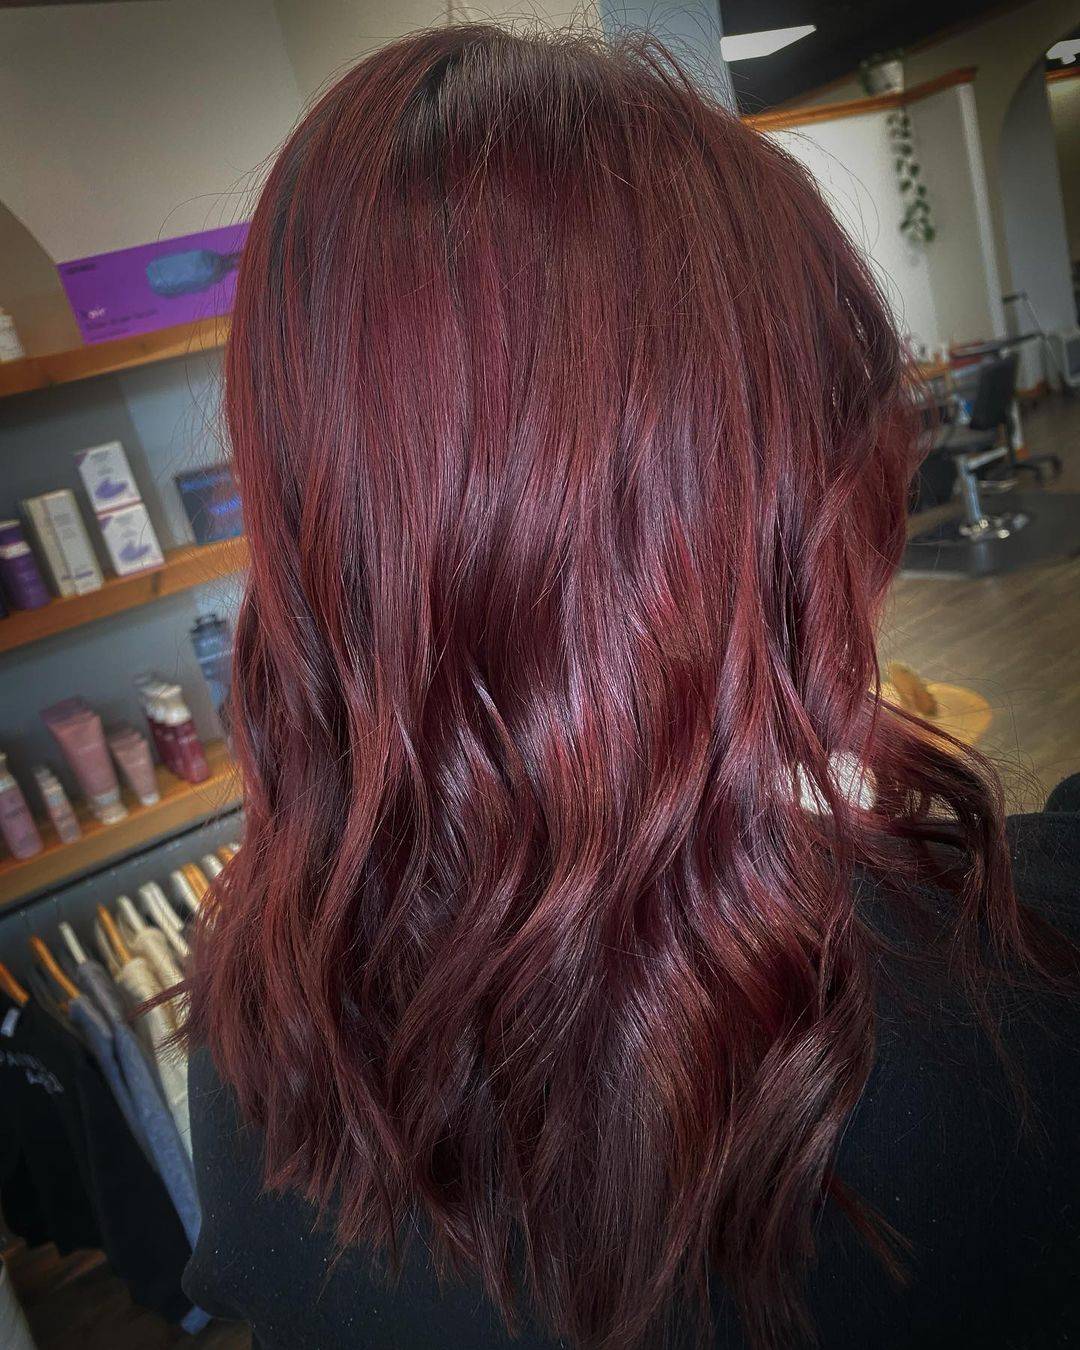 Burgundy hair color 424 burgundy hair color | burgundy hair color for women | burgundy hair color highlights Burgundy Hair Color